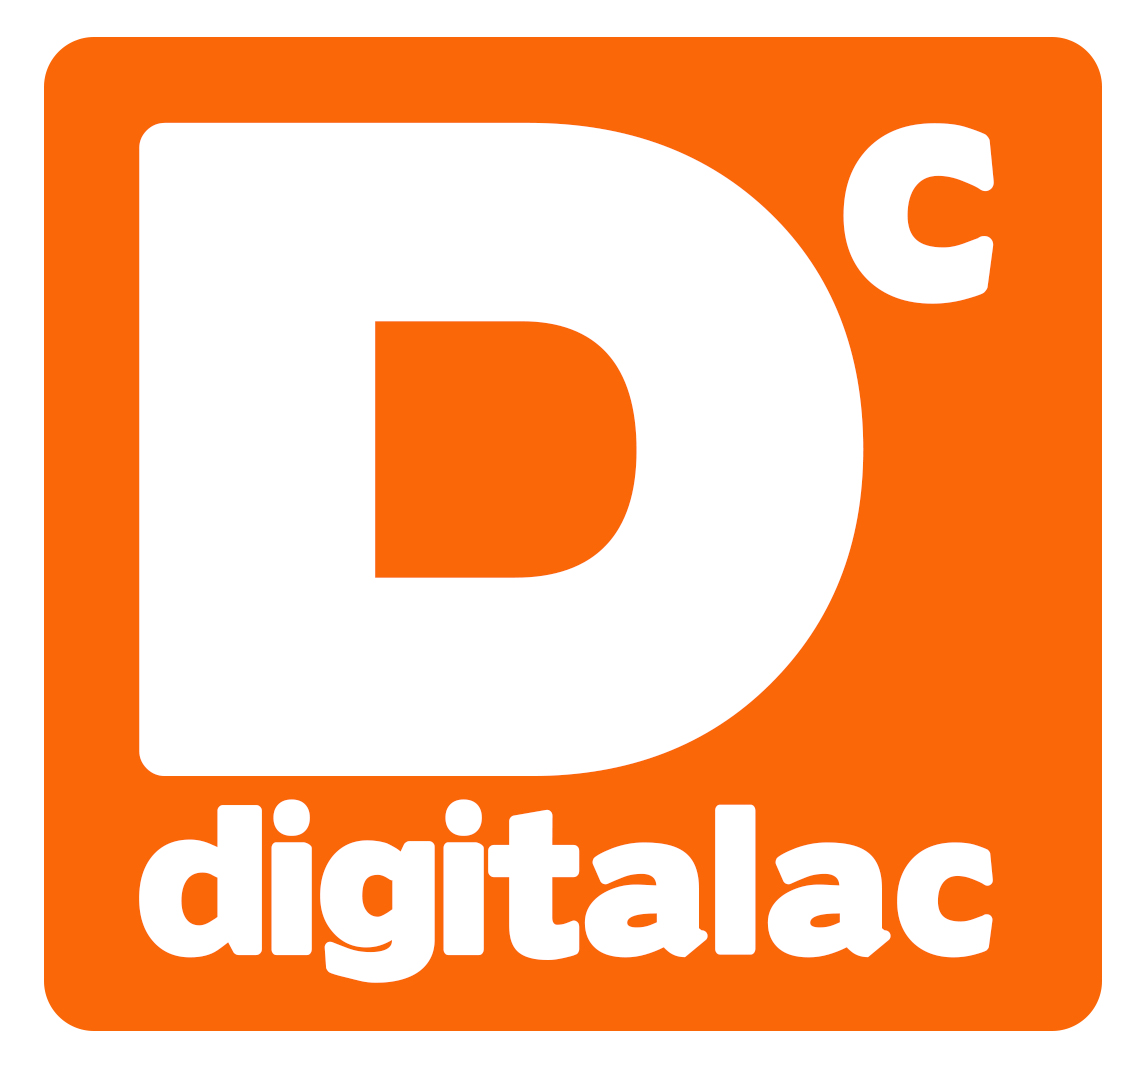 digitalac